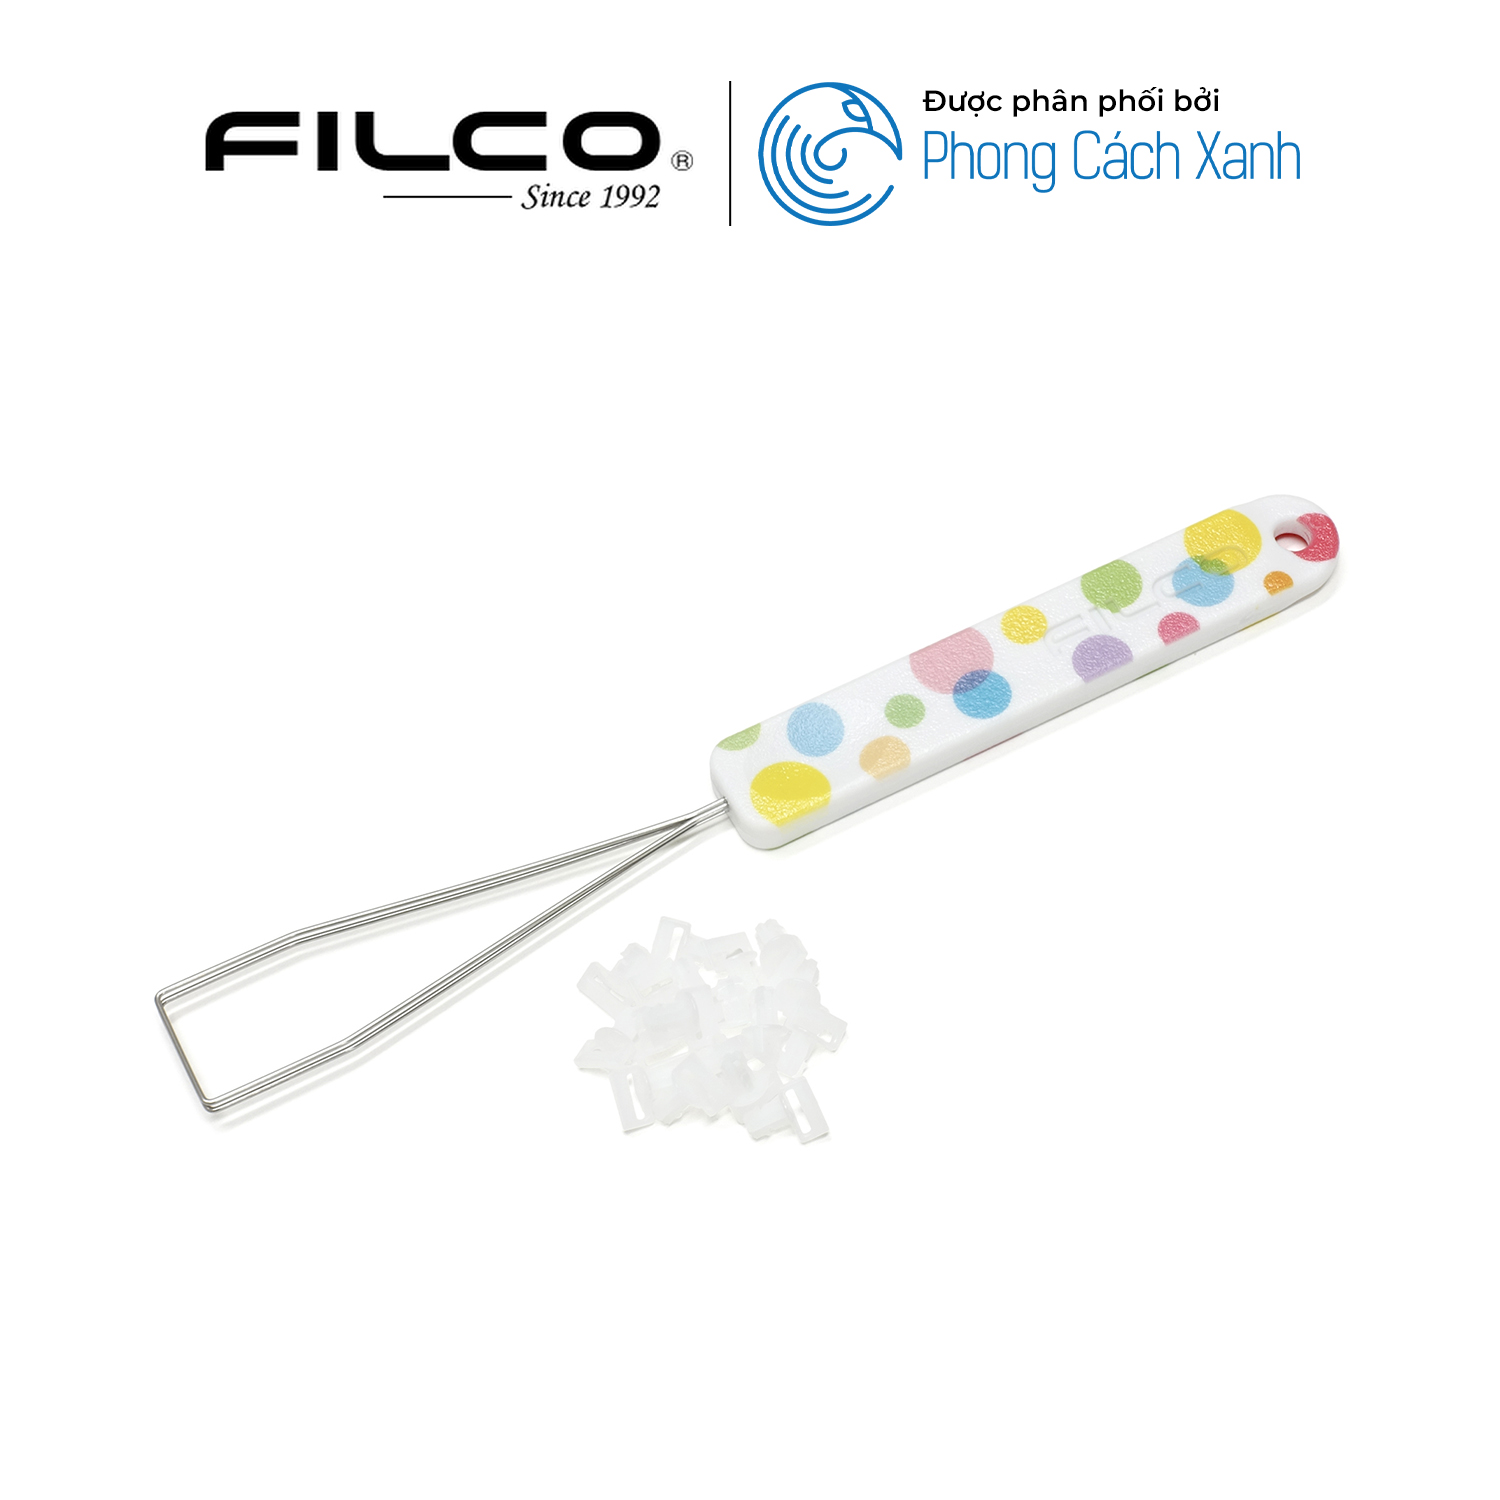 Bộ keycap Filco Macaron 104 phím - Chữ mặt trên - Hàng Chính Hãng